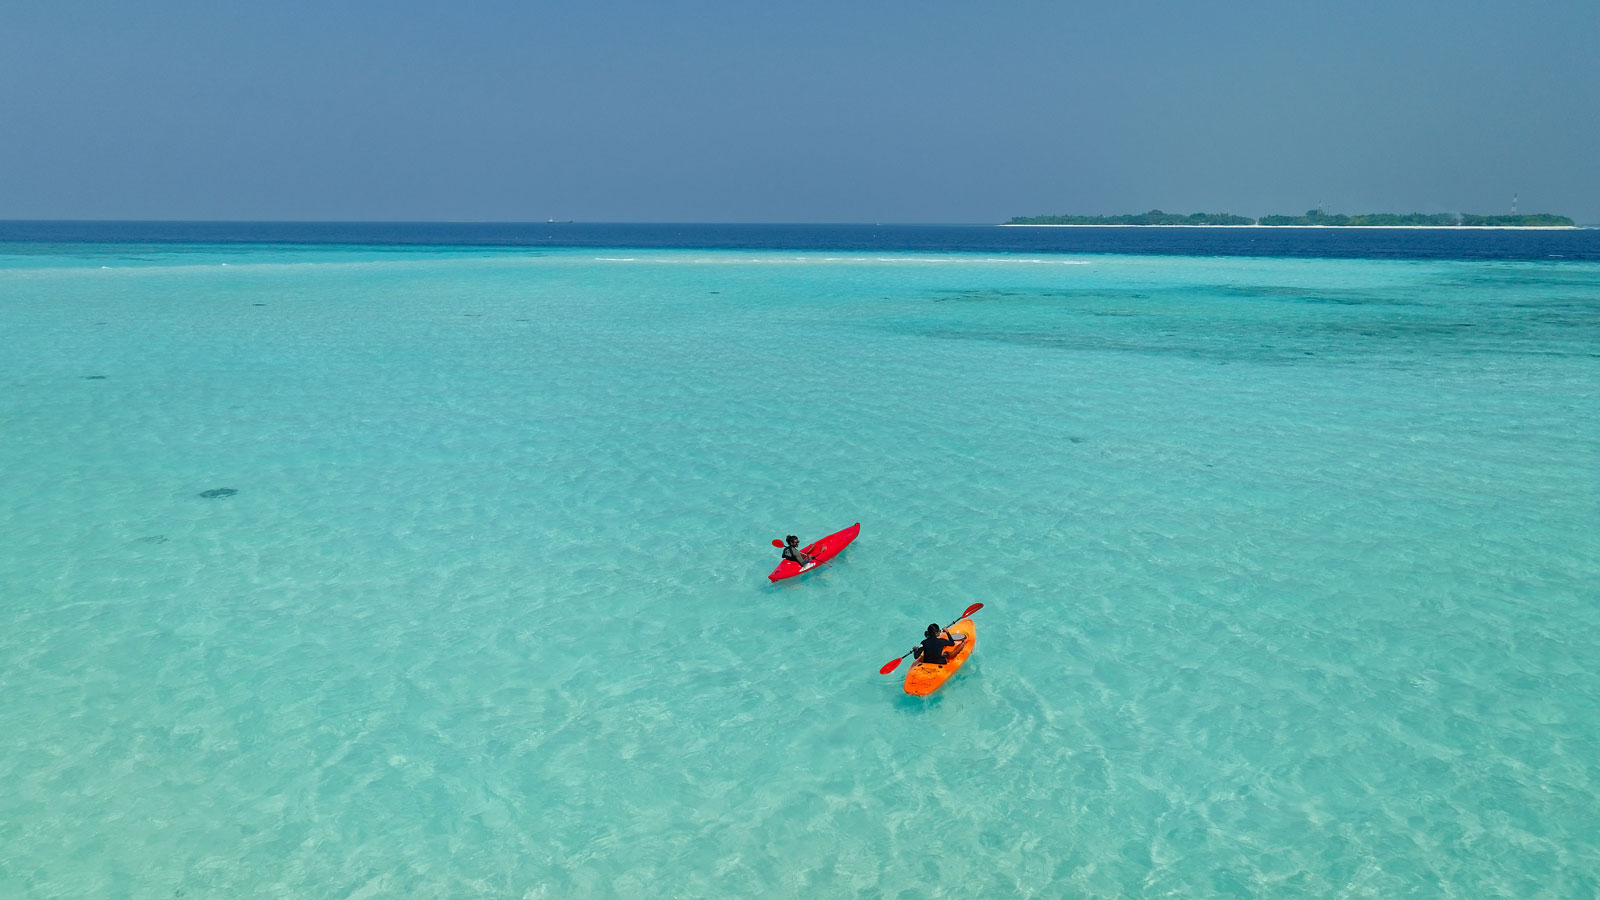 Kayaking and ocean view - Amari Raaya Maldives